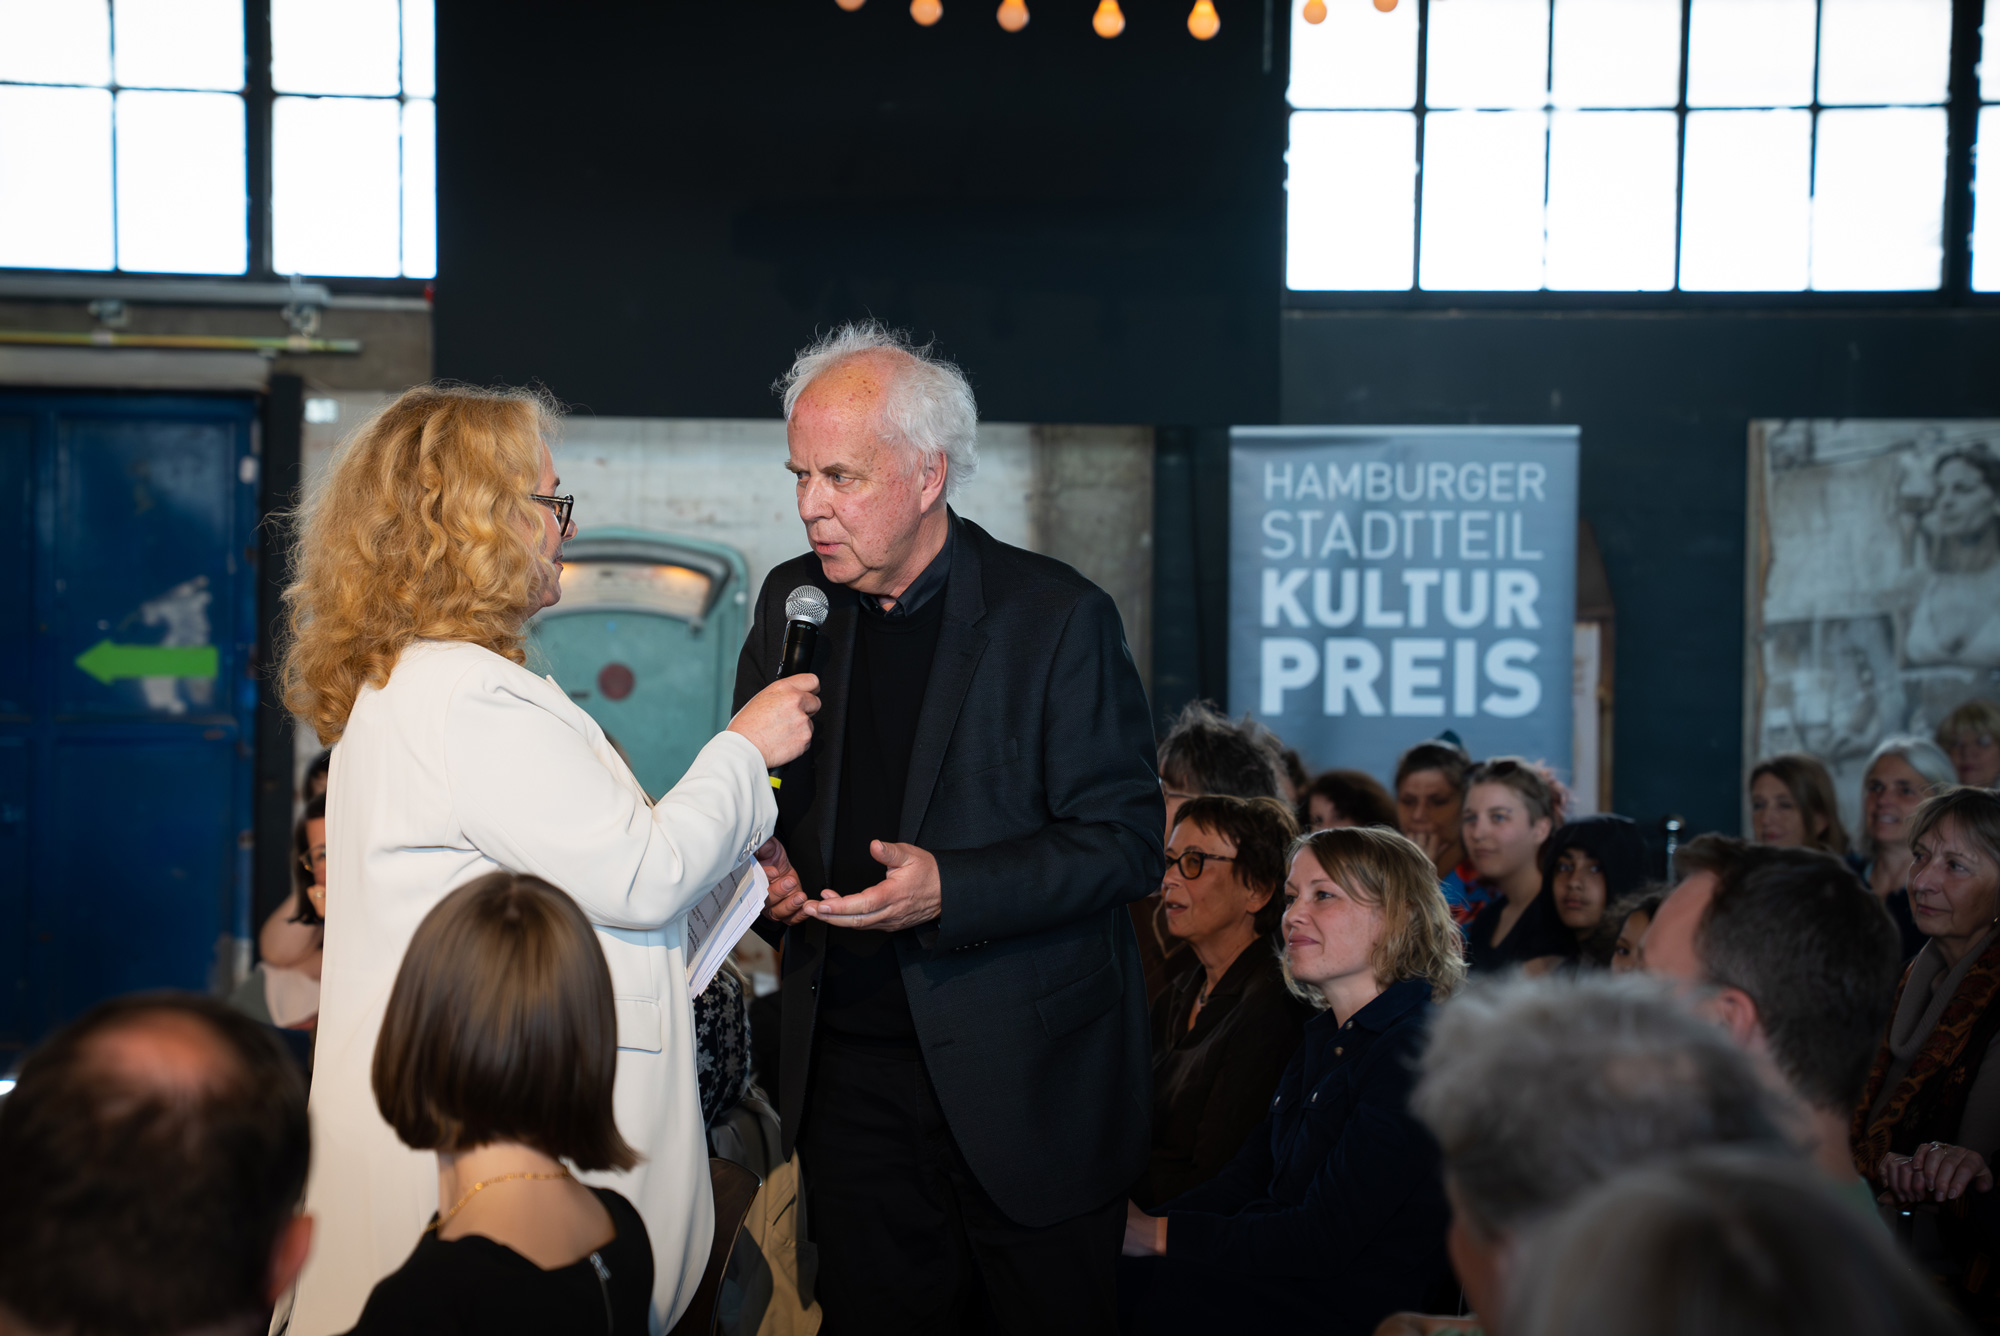 Geschäftsführerin Corinne Eichner blickt zum Jubiläum mit Werner Frömming zurück, der den Preis entwickelt und die ersten 10 Jahre durchgeführt hatte.